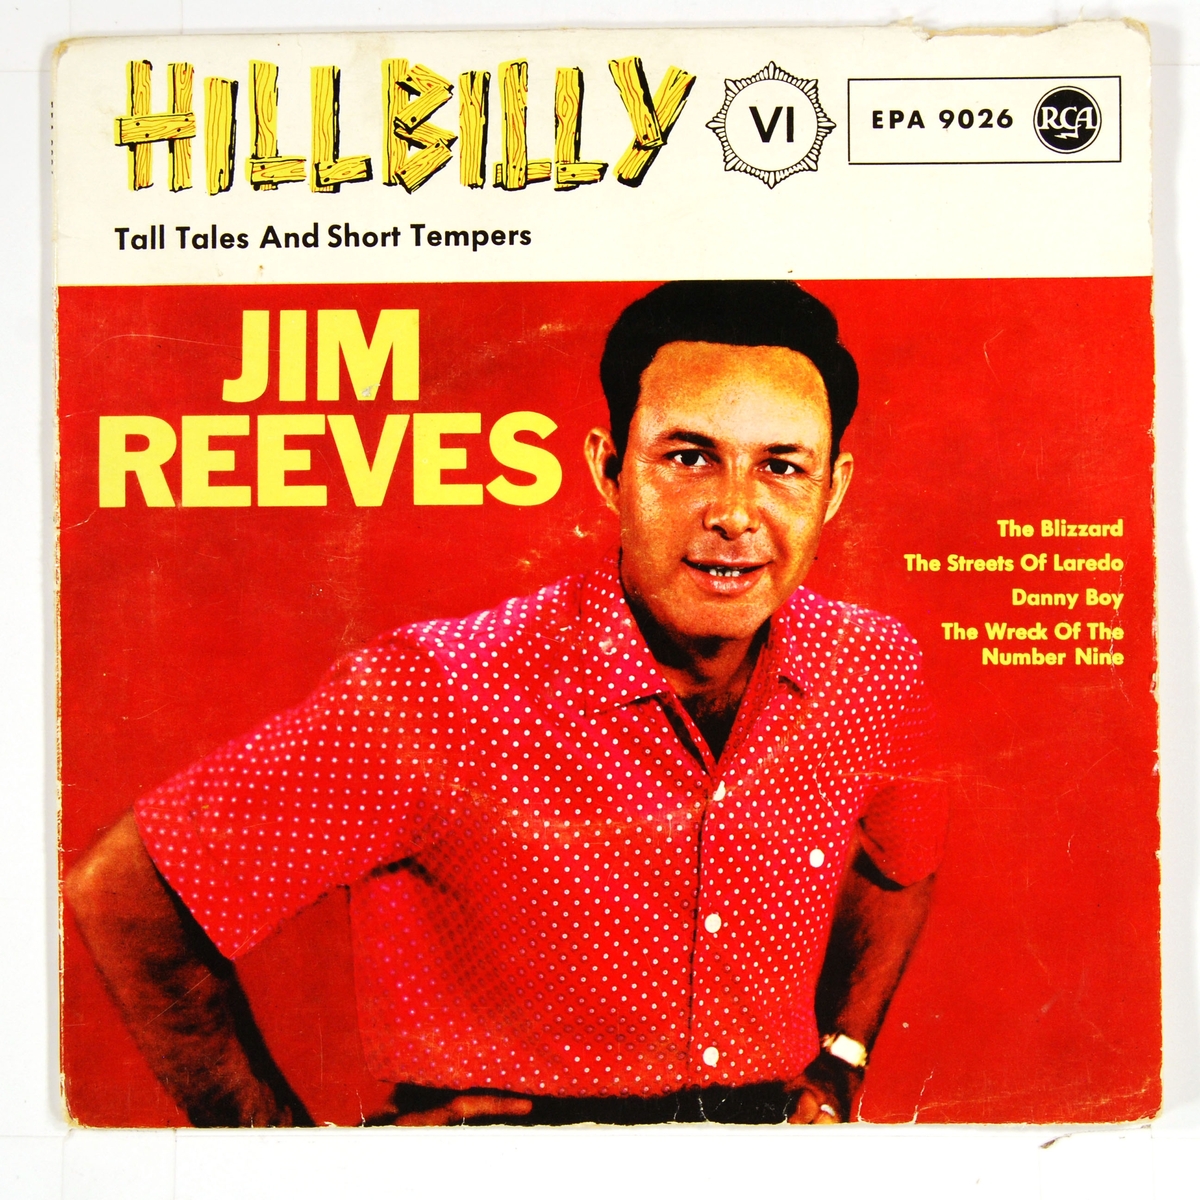 Bilde av Jim Reeves kledd i mønstret skjorte.